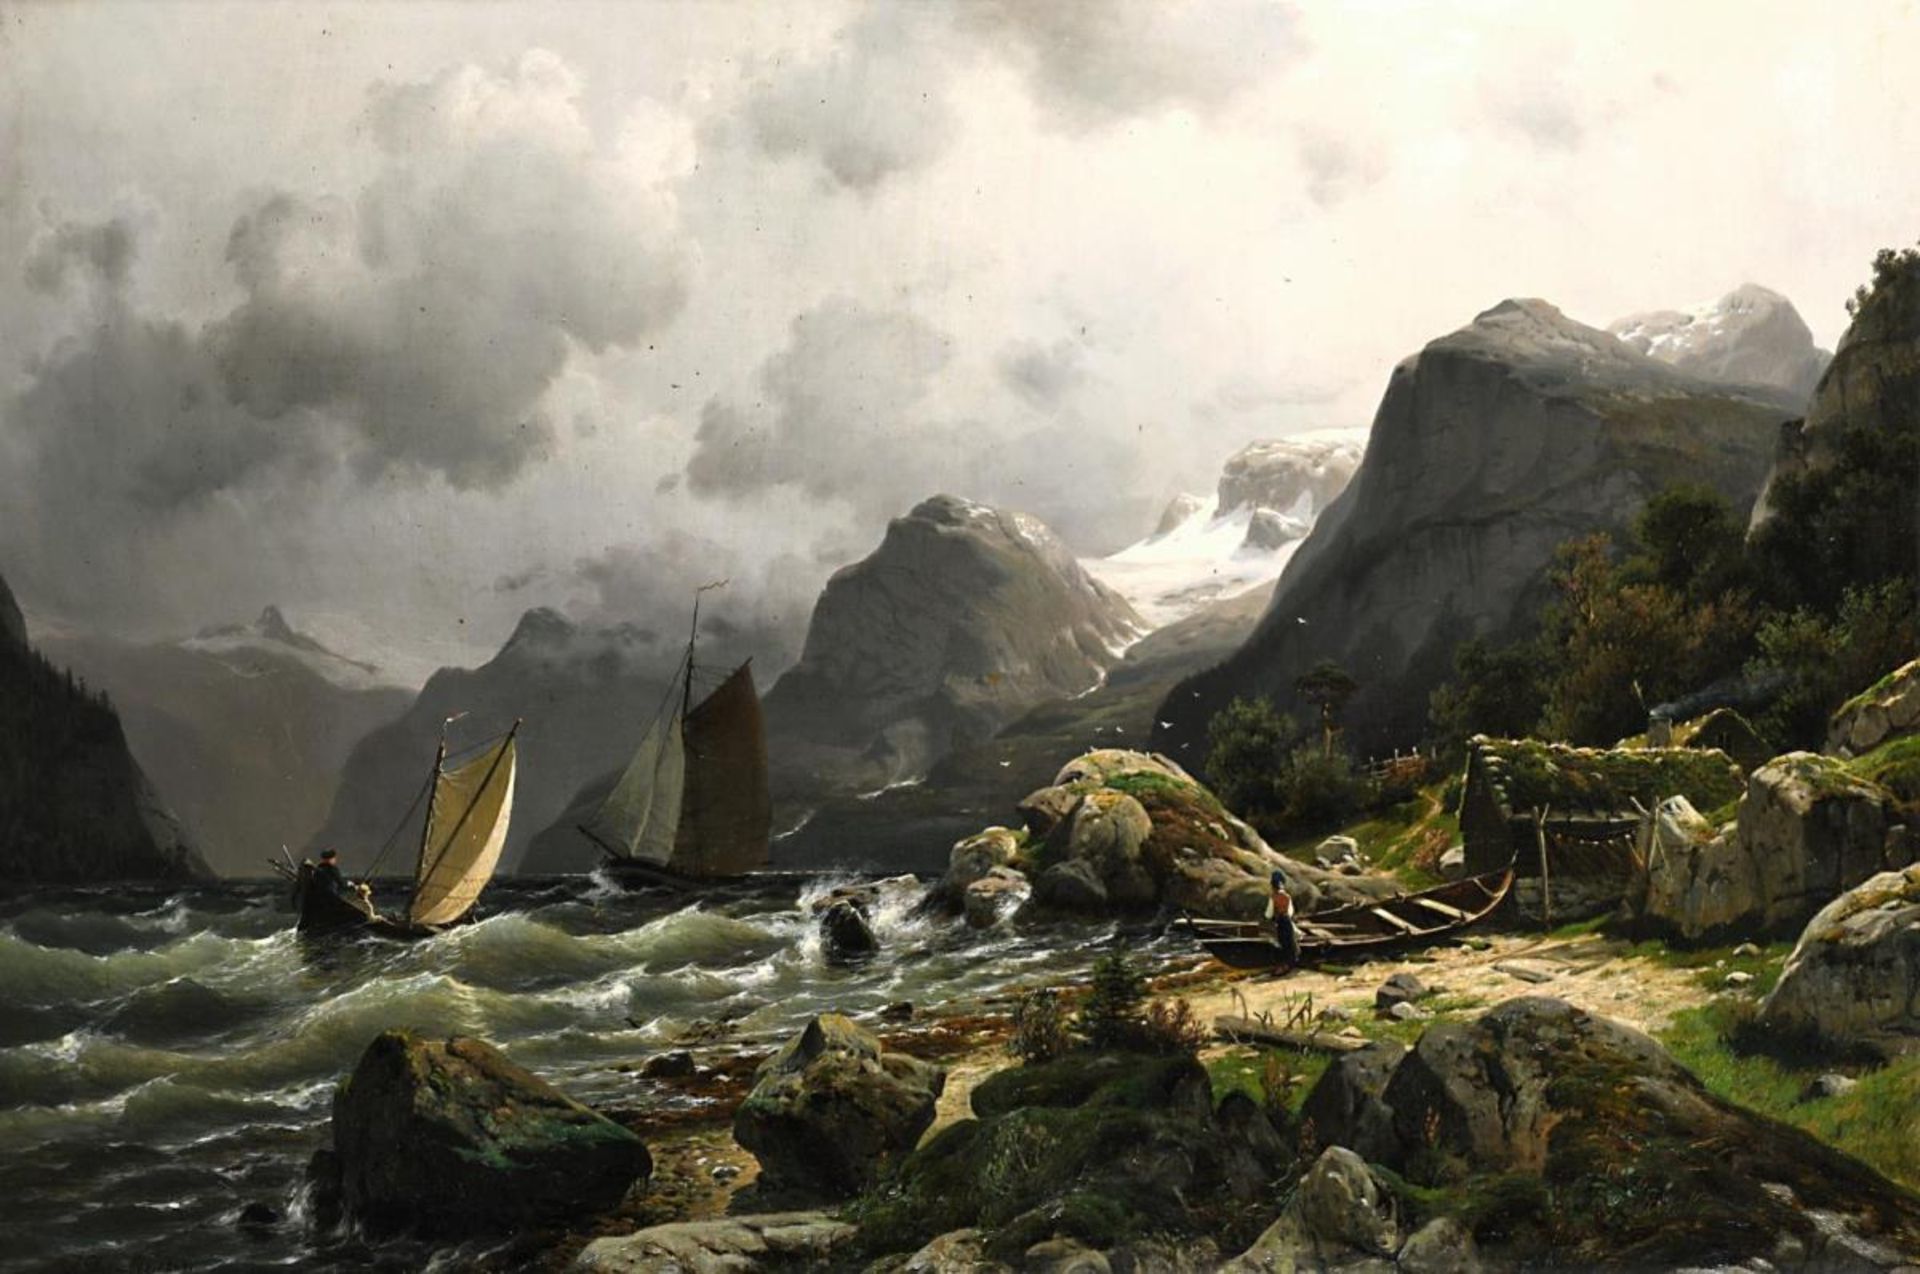 Segelboote in norwegischer Fjordlandschaft bei Sturm